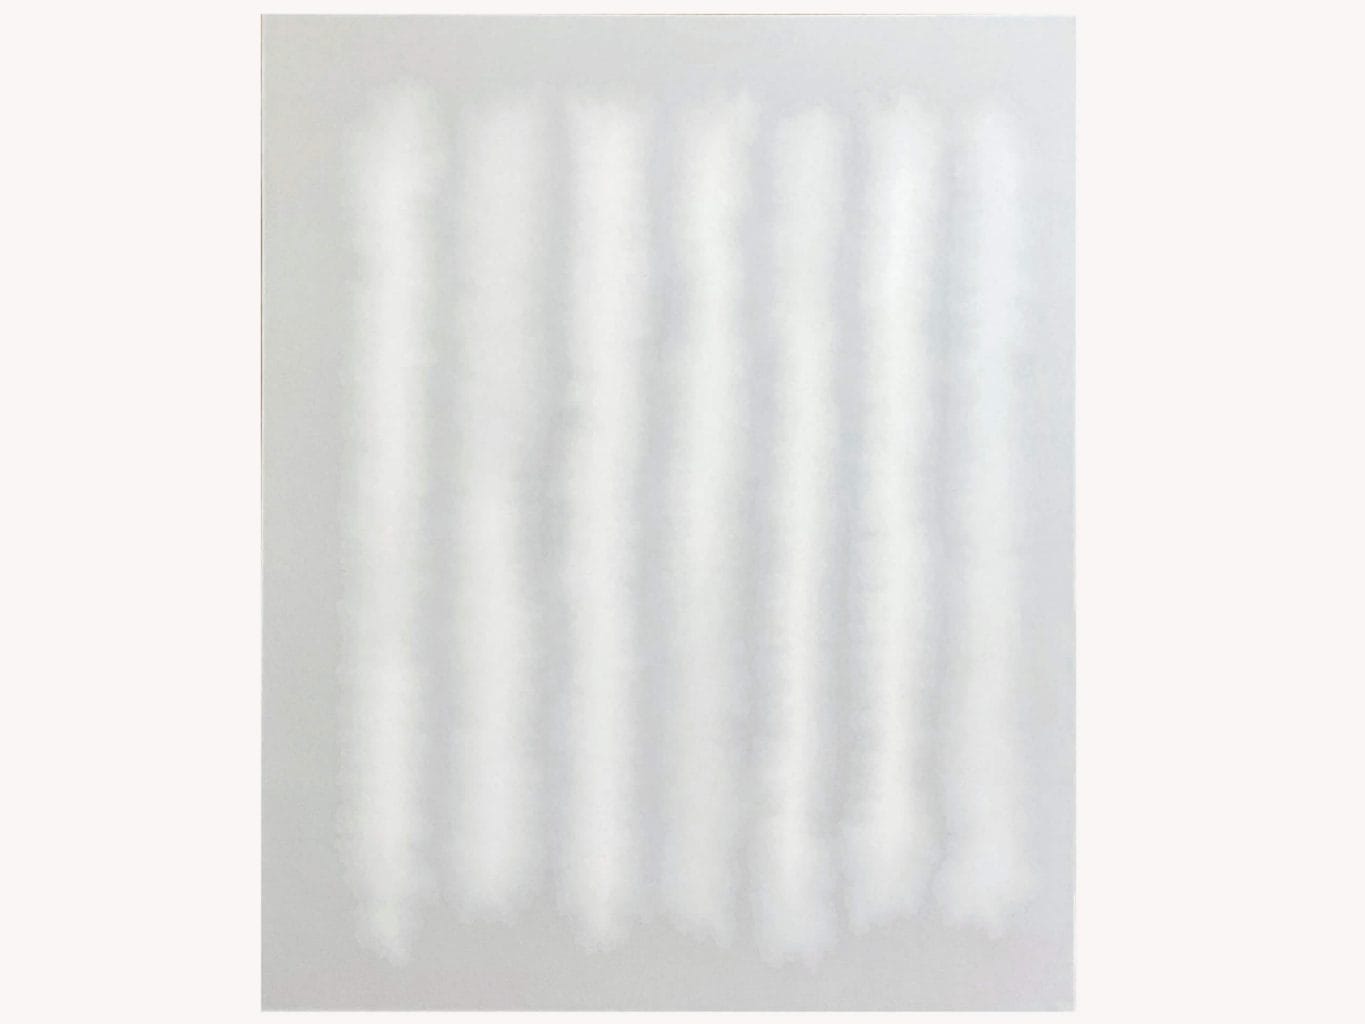 和紙の上に岩絵具や胡粉で無数の層を描き、うつろう光と呼応する作品を生み出す石橋志郎の新作展「Silence」、+1artにて。